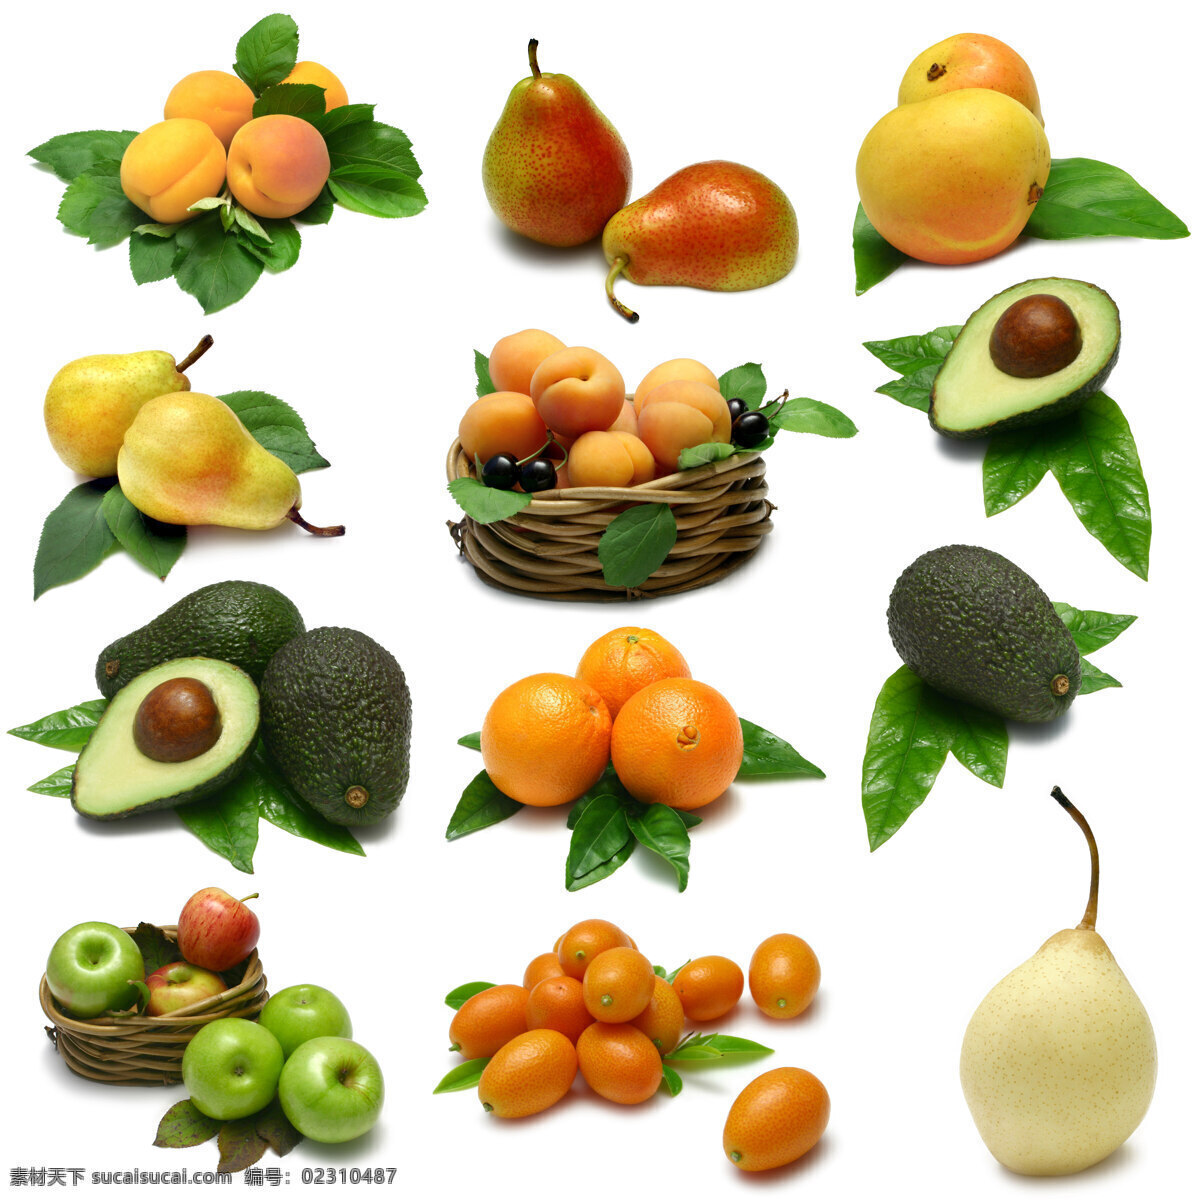 高清水果图片 水果 新鲜 苹果 菠萝 梨子 香蕉 西瓜 柠檬 哈密瓜 荔枝 橘子 橙子 葡萄 草莓 各种水果 生物世界